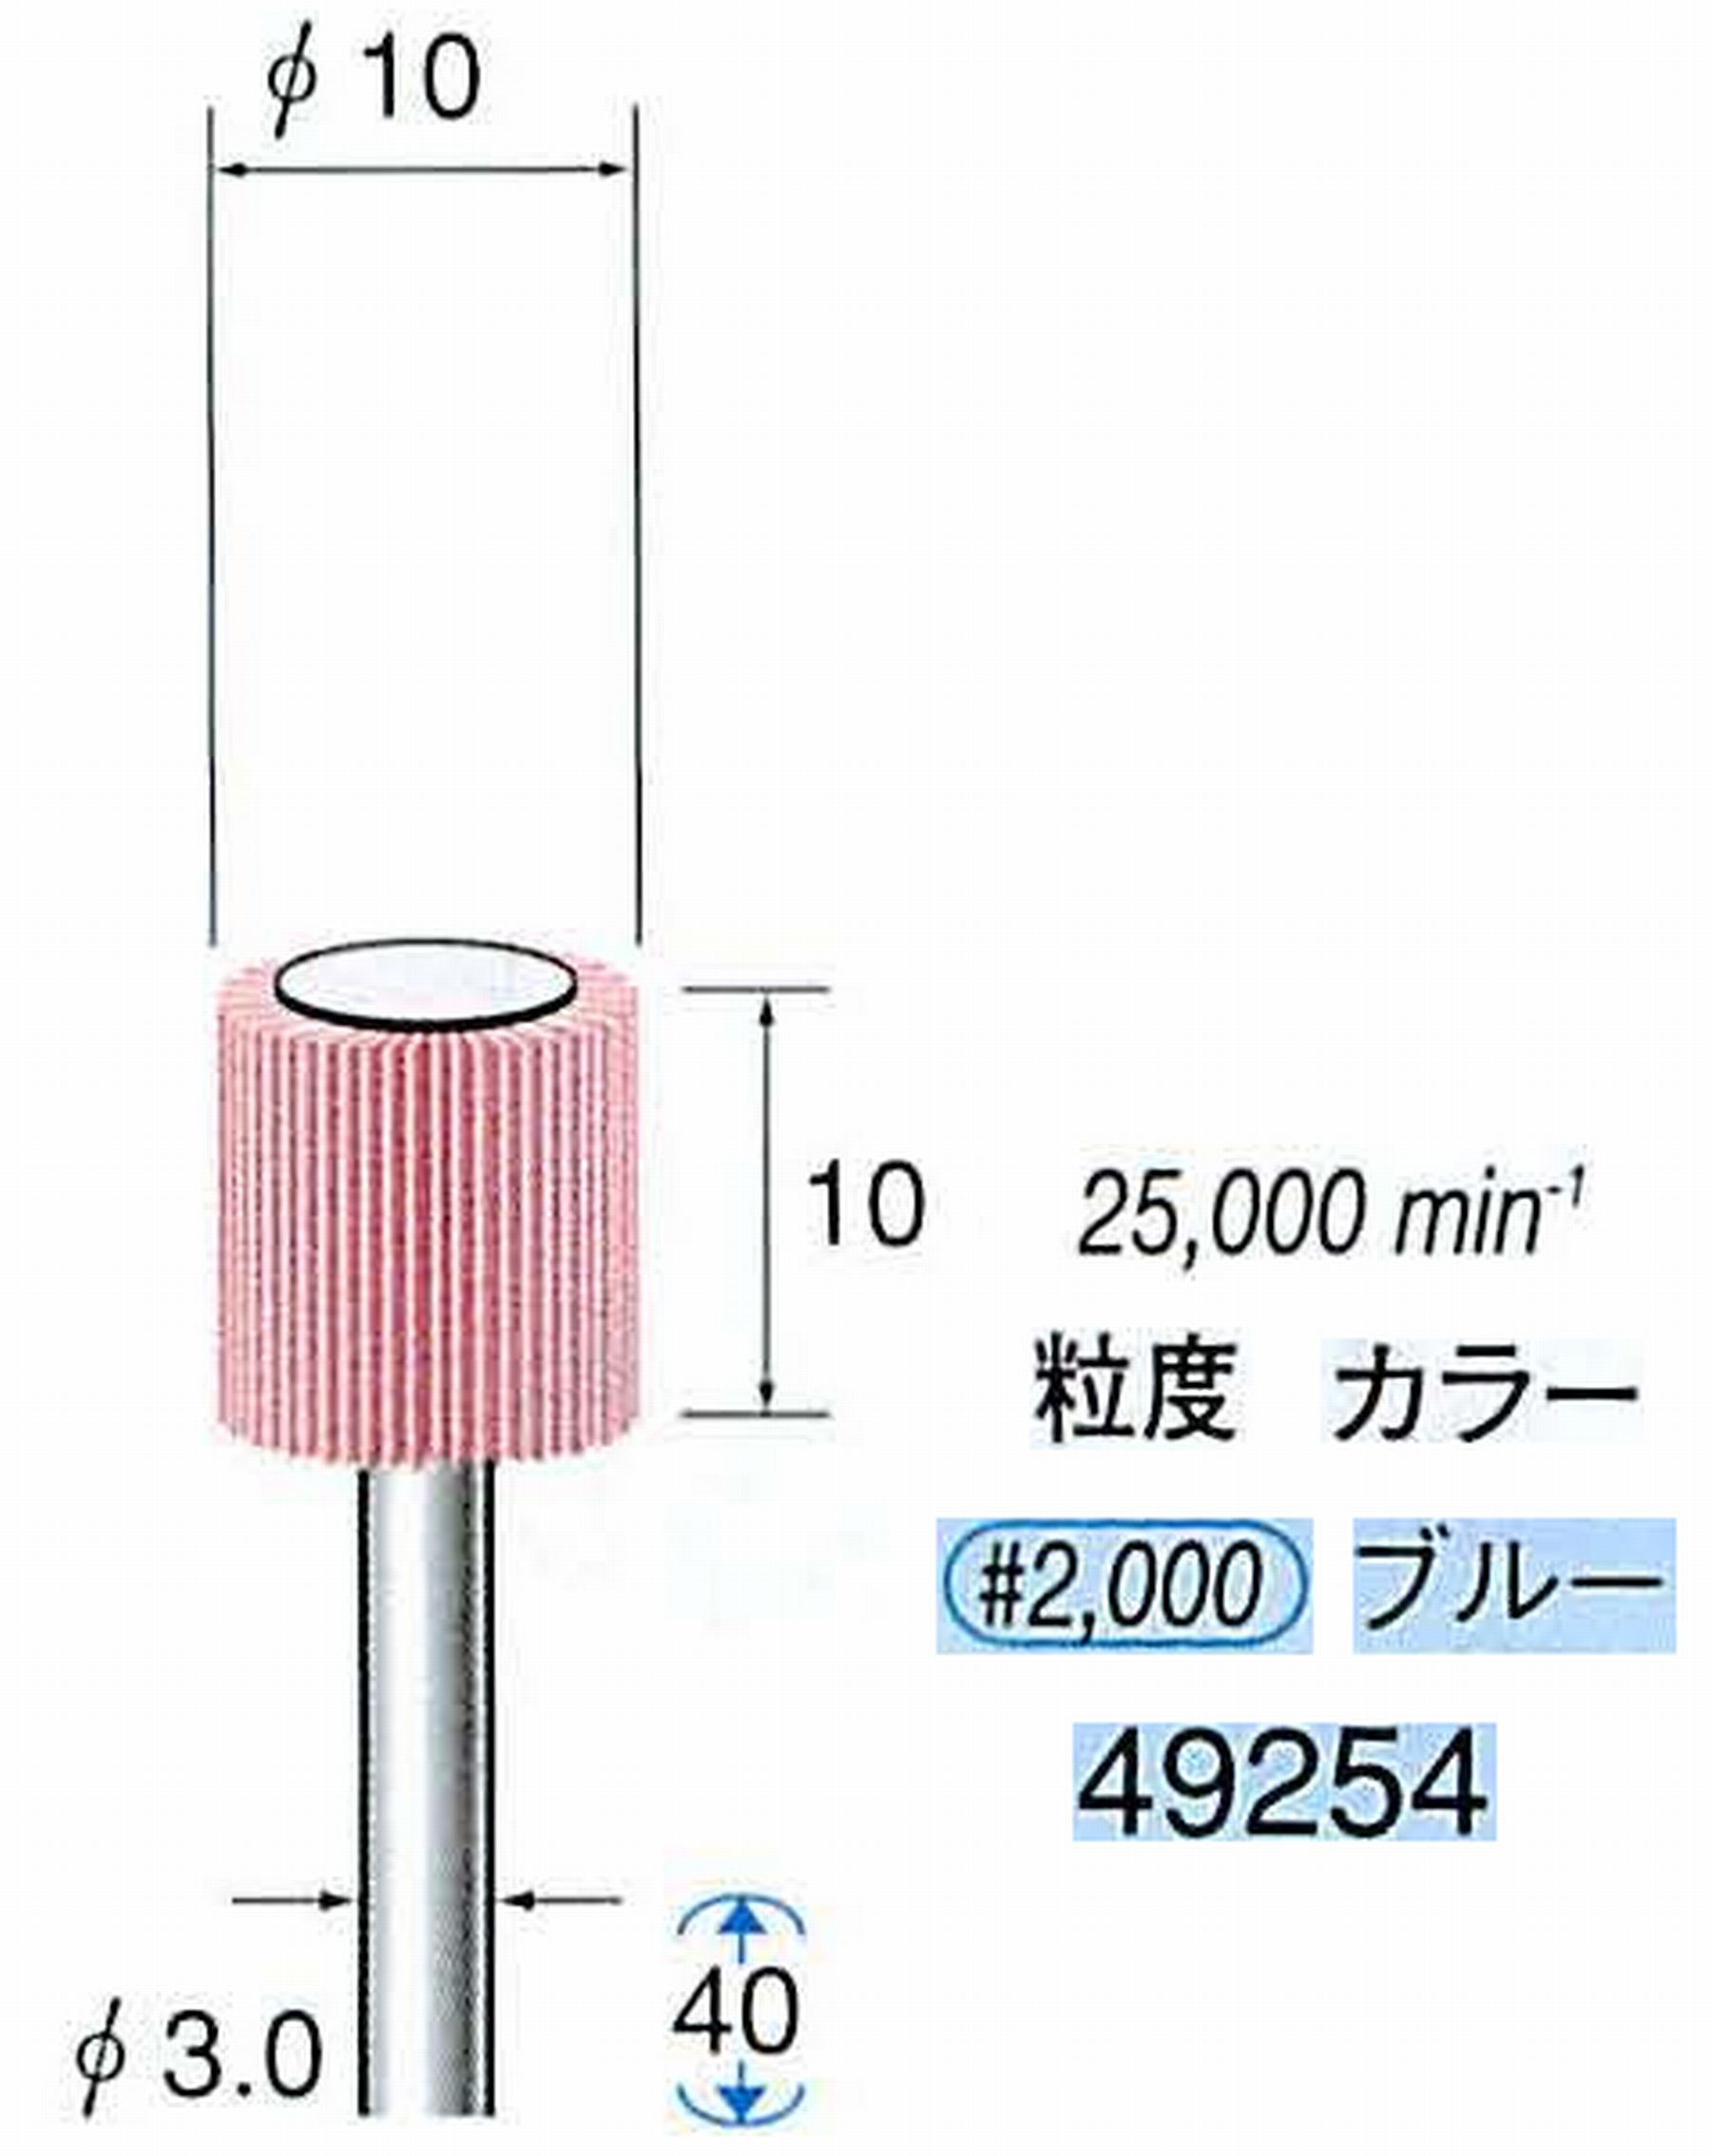 ナカニシ/NAKANISHI ファイン フラップサンダー 軸径(シャンク)φ3.0mm 49254